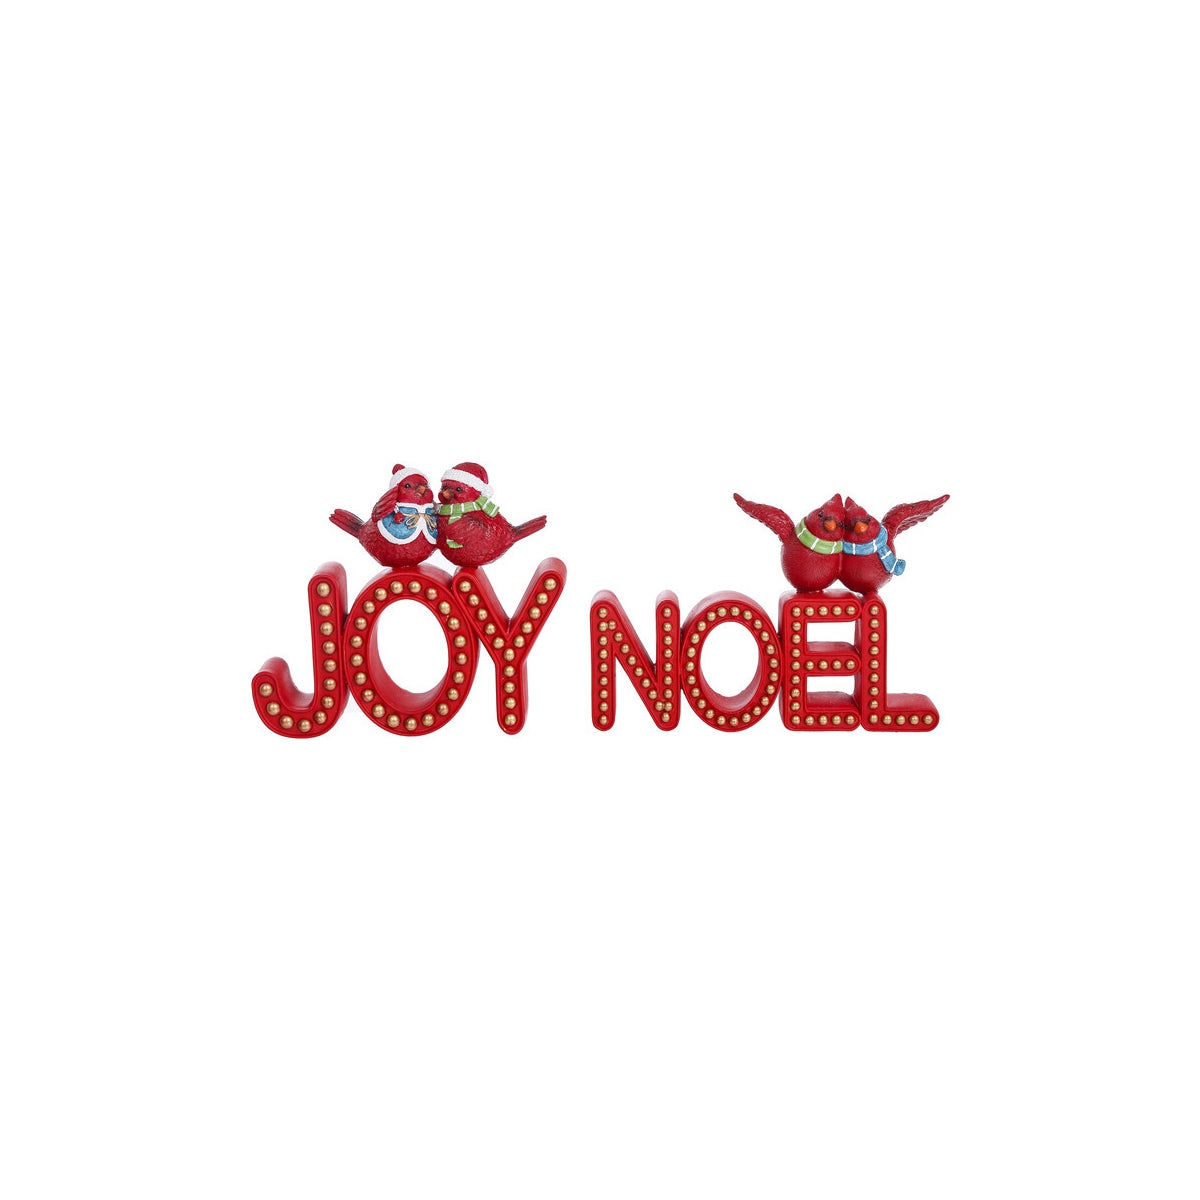 Rsn 2-Bird Joy/Noel Stand 2 Asst